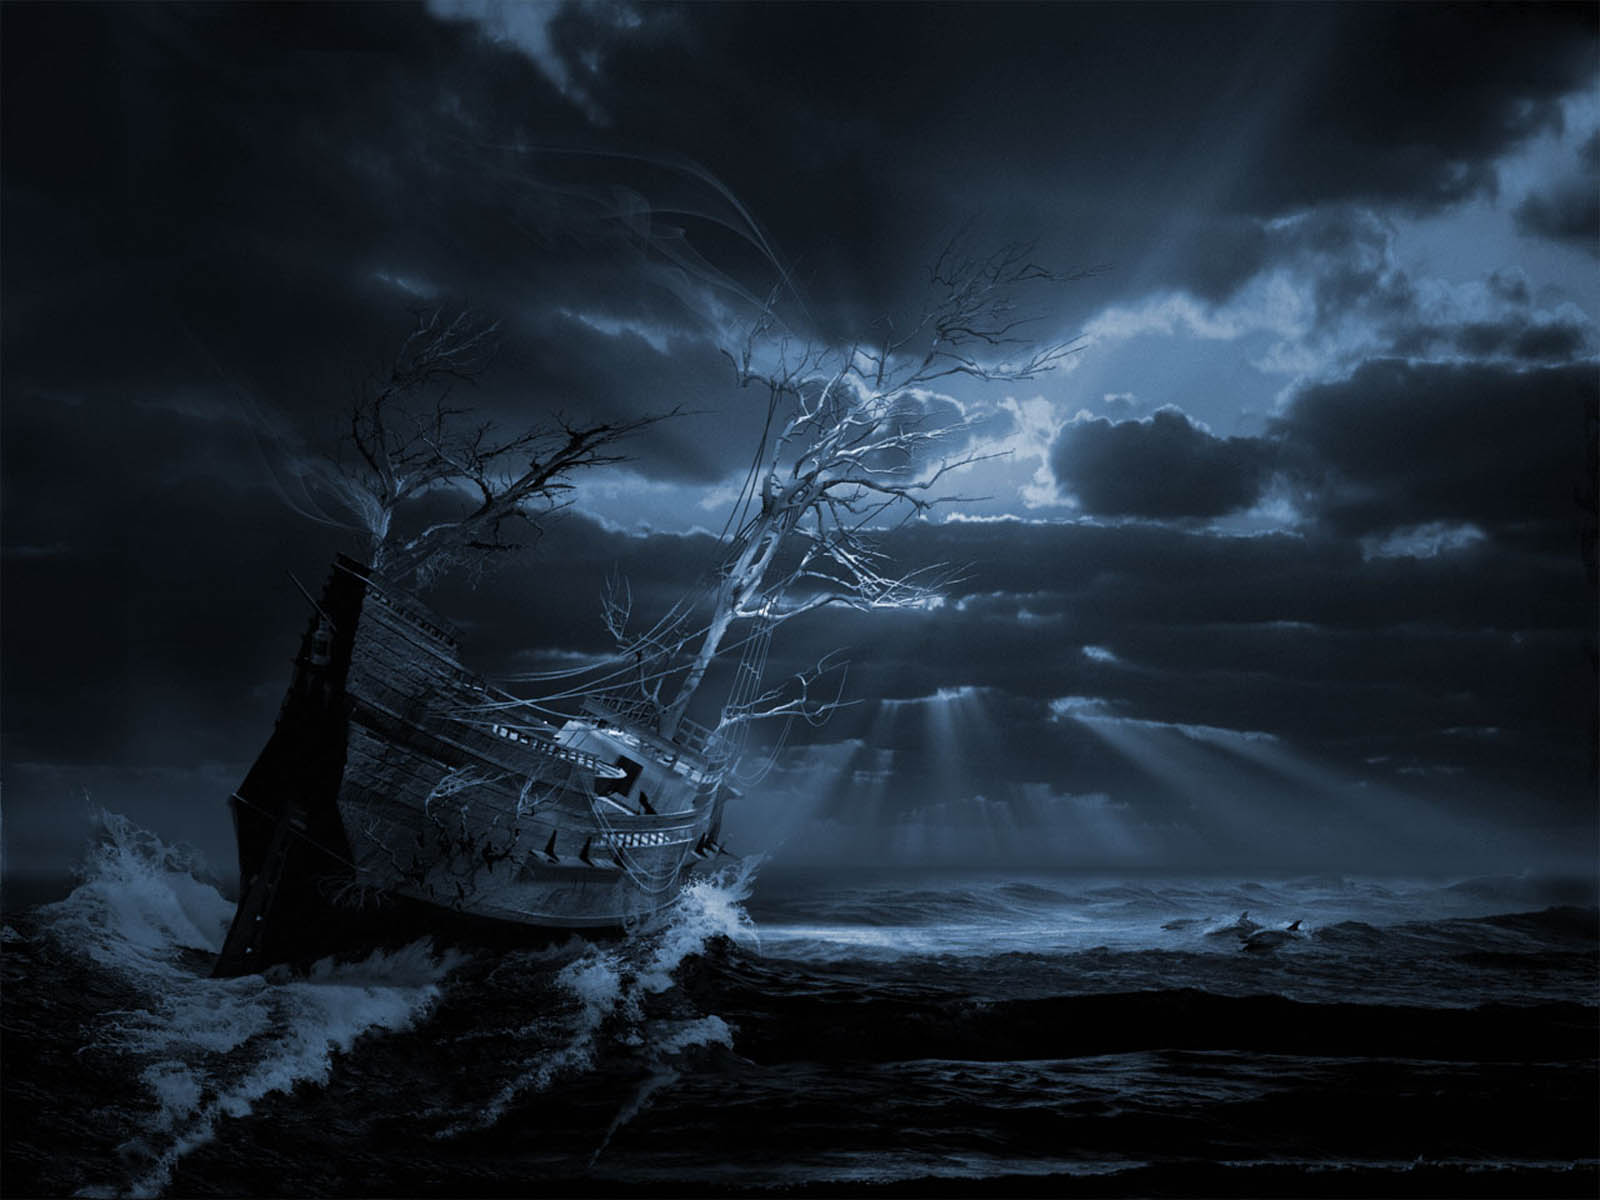 古い船の壁紙,空,自然,闇,雷雨,水